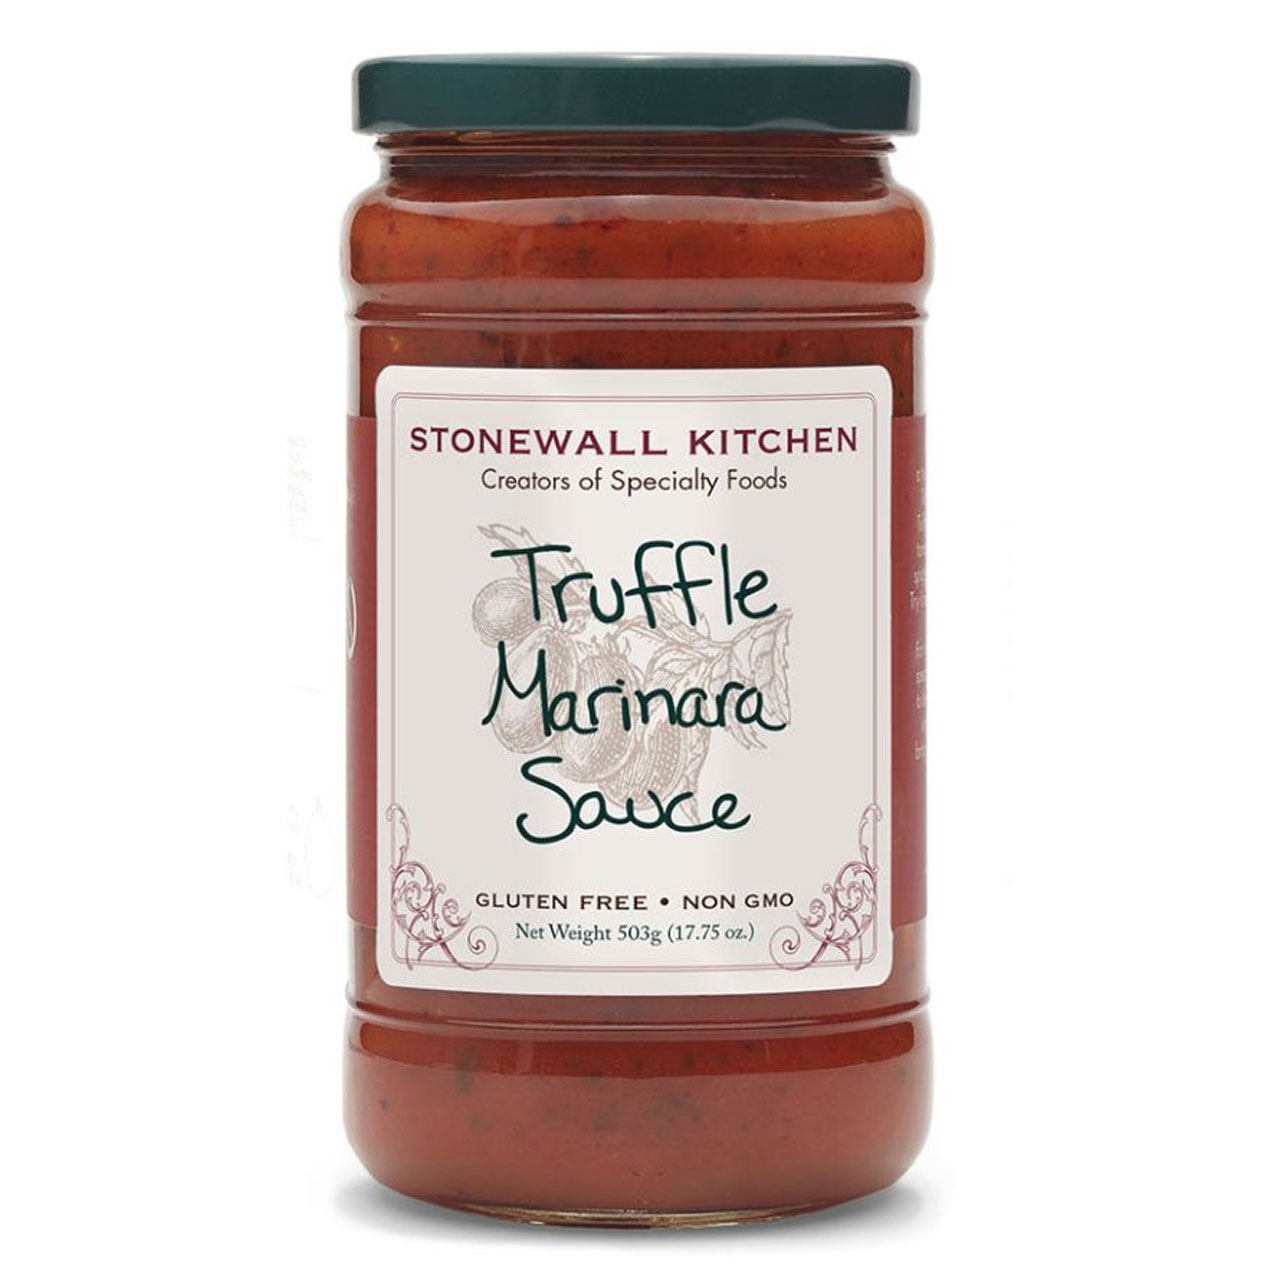 Stonewall Kitchen - Truffle Marinara Sauce, 503 g